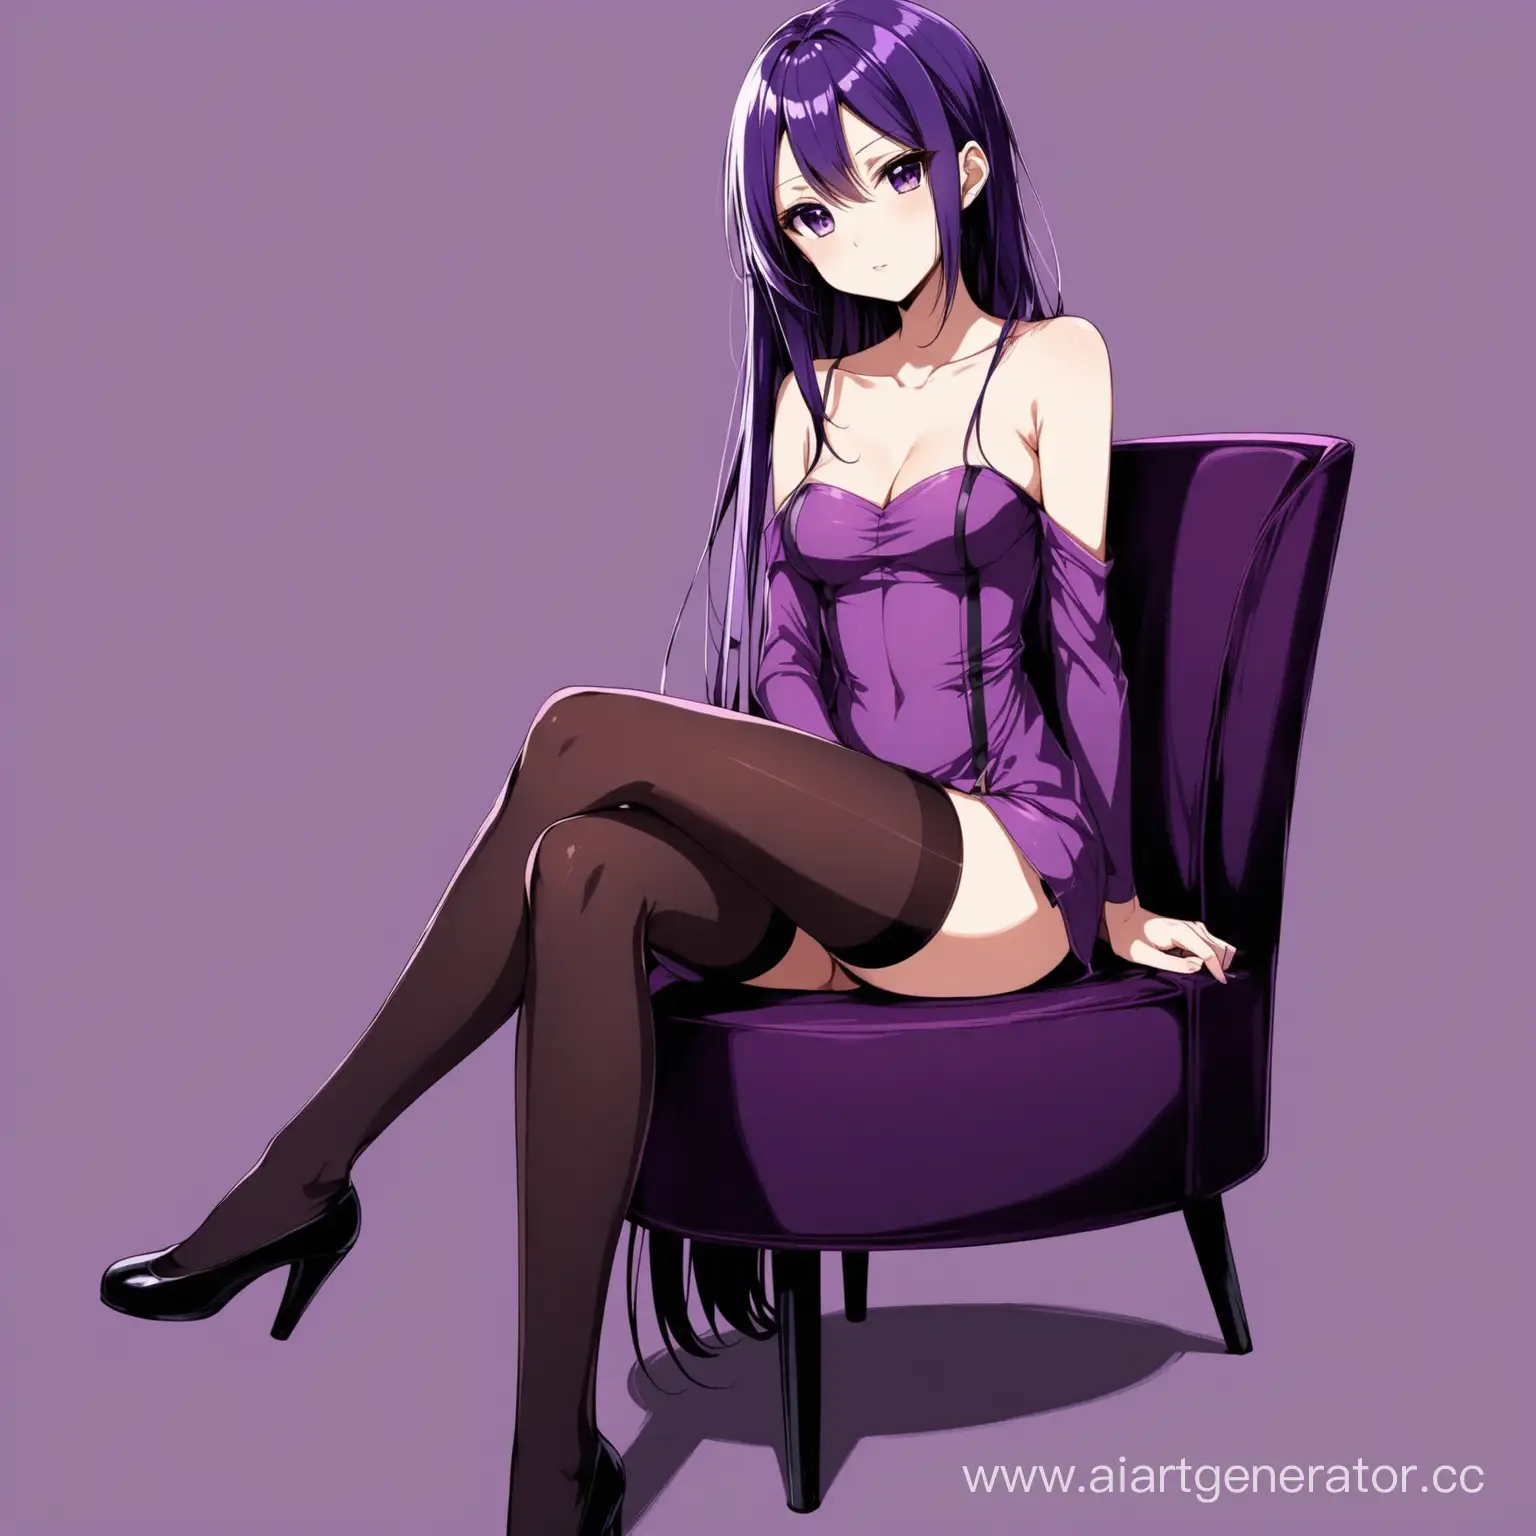 Стройная аниме девушка с оголенными плечами в чулках и фиолетовой одежде с пурпурными волосами сидит скрестив ноги